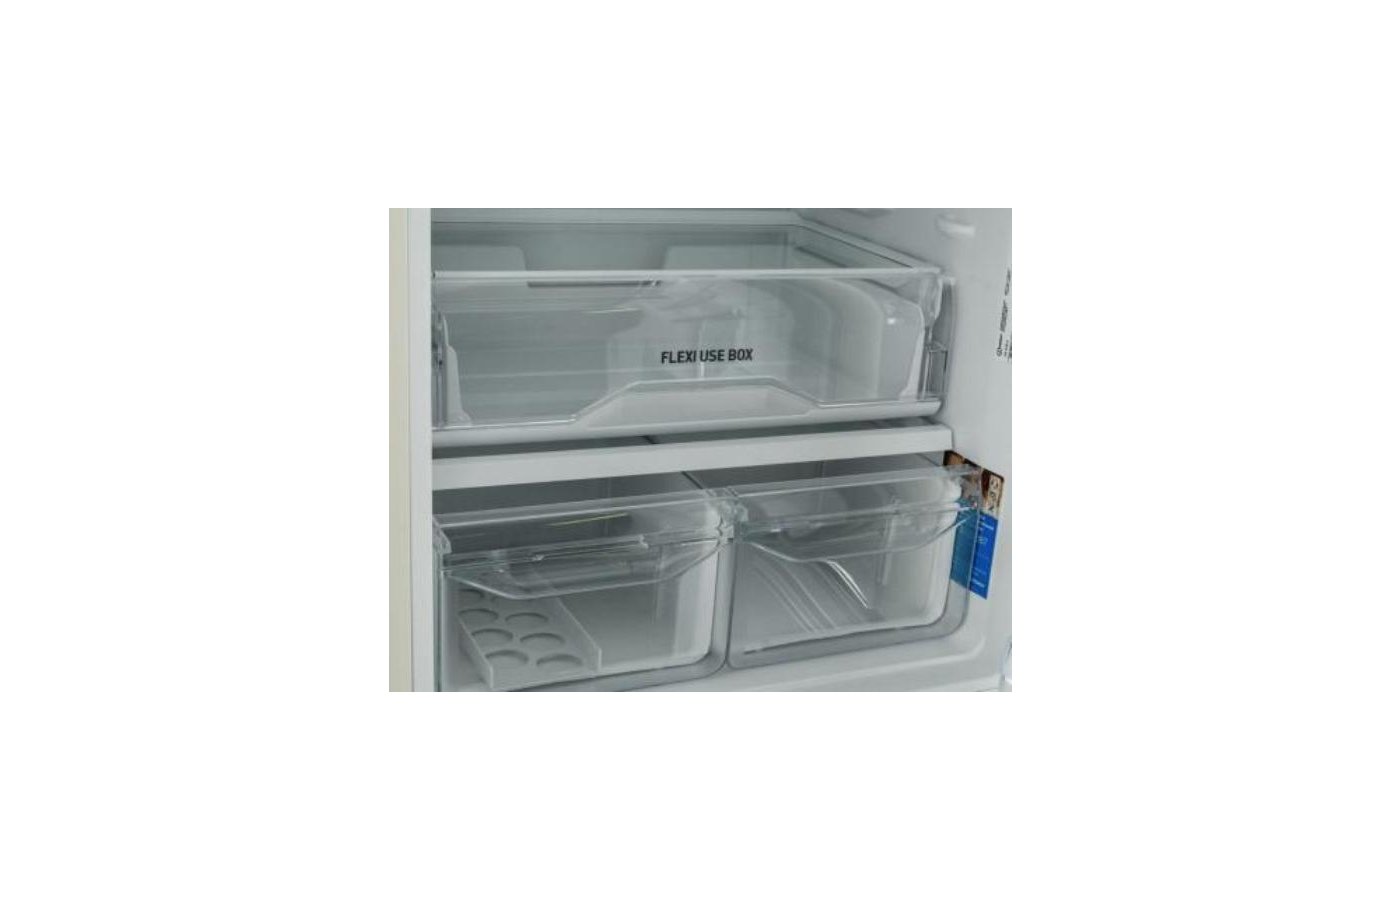 Холодильник индезит отзывы специалистов